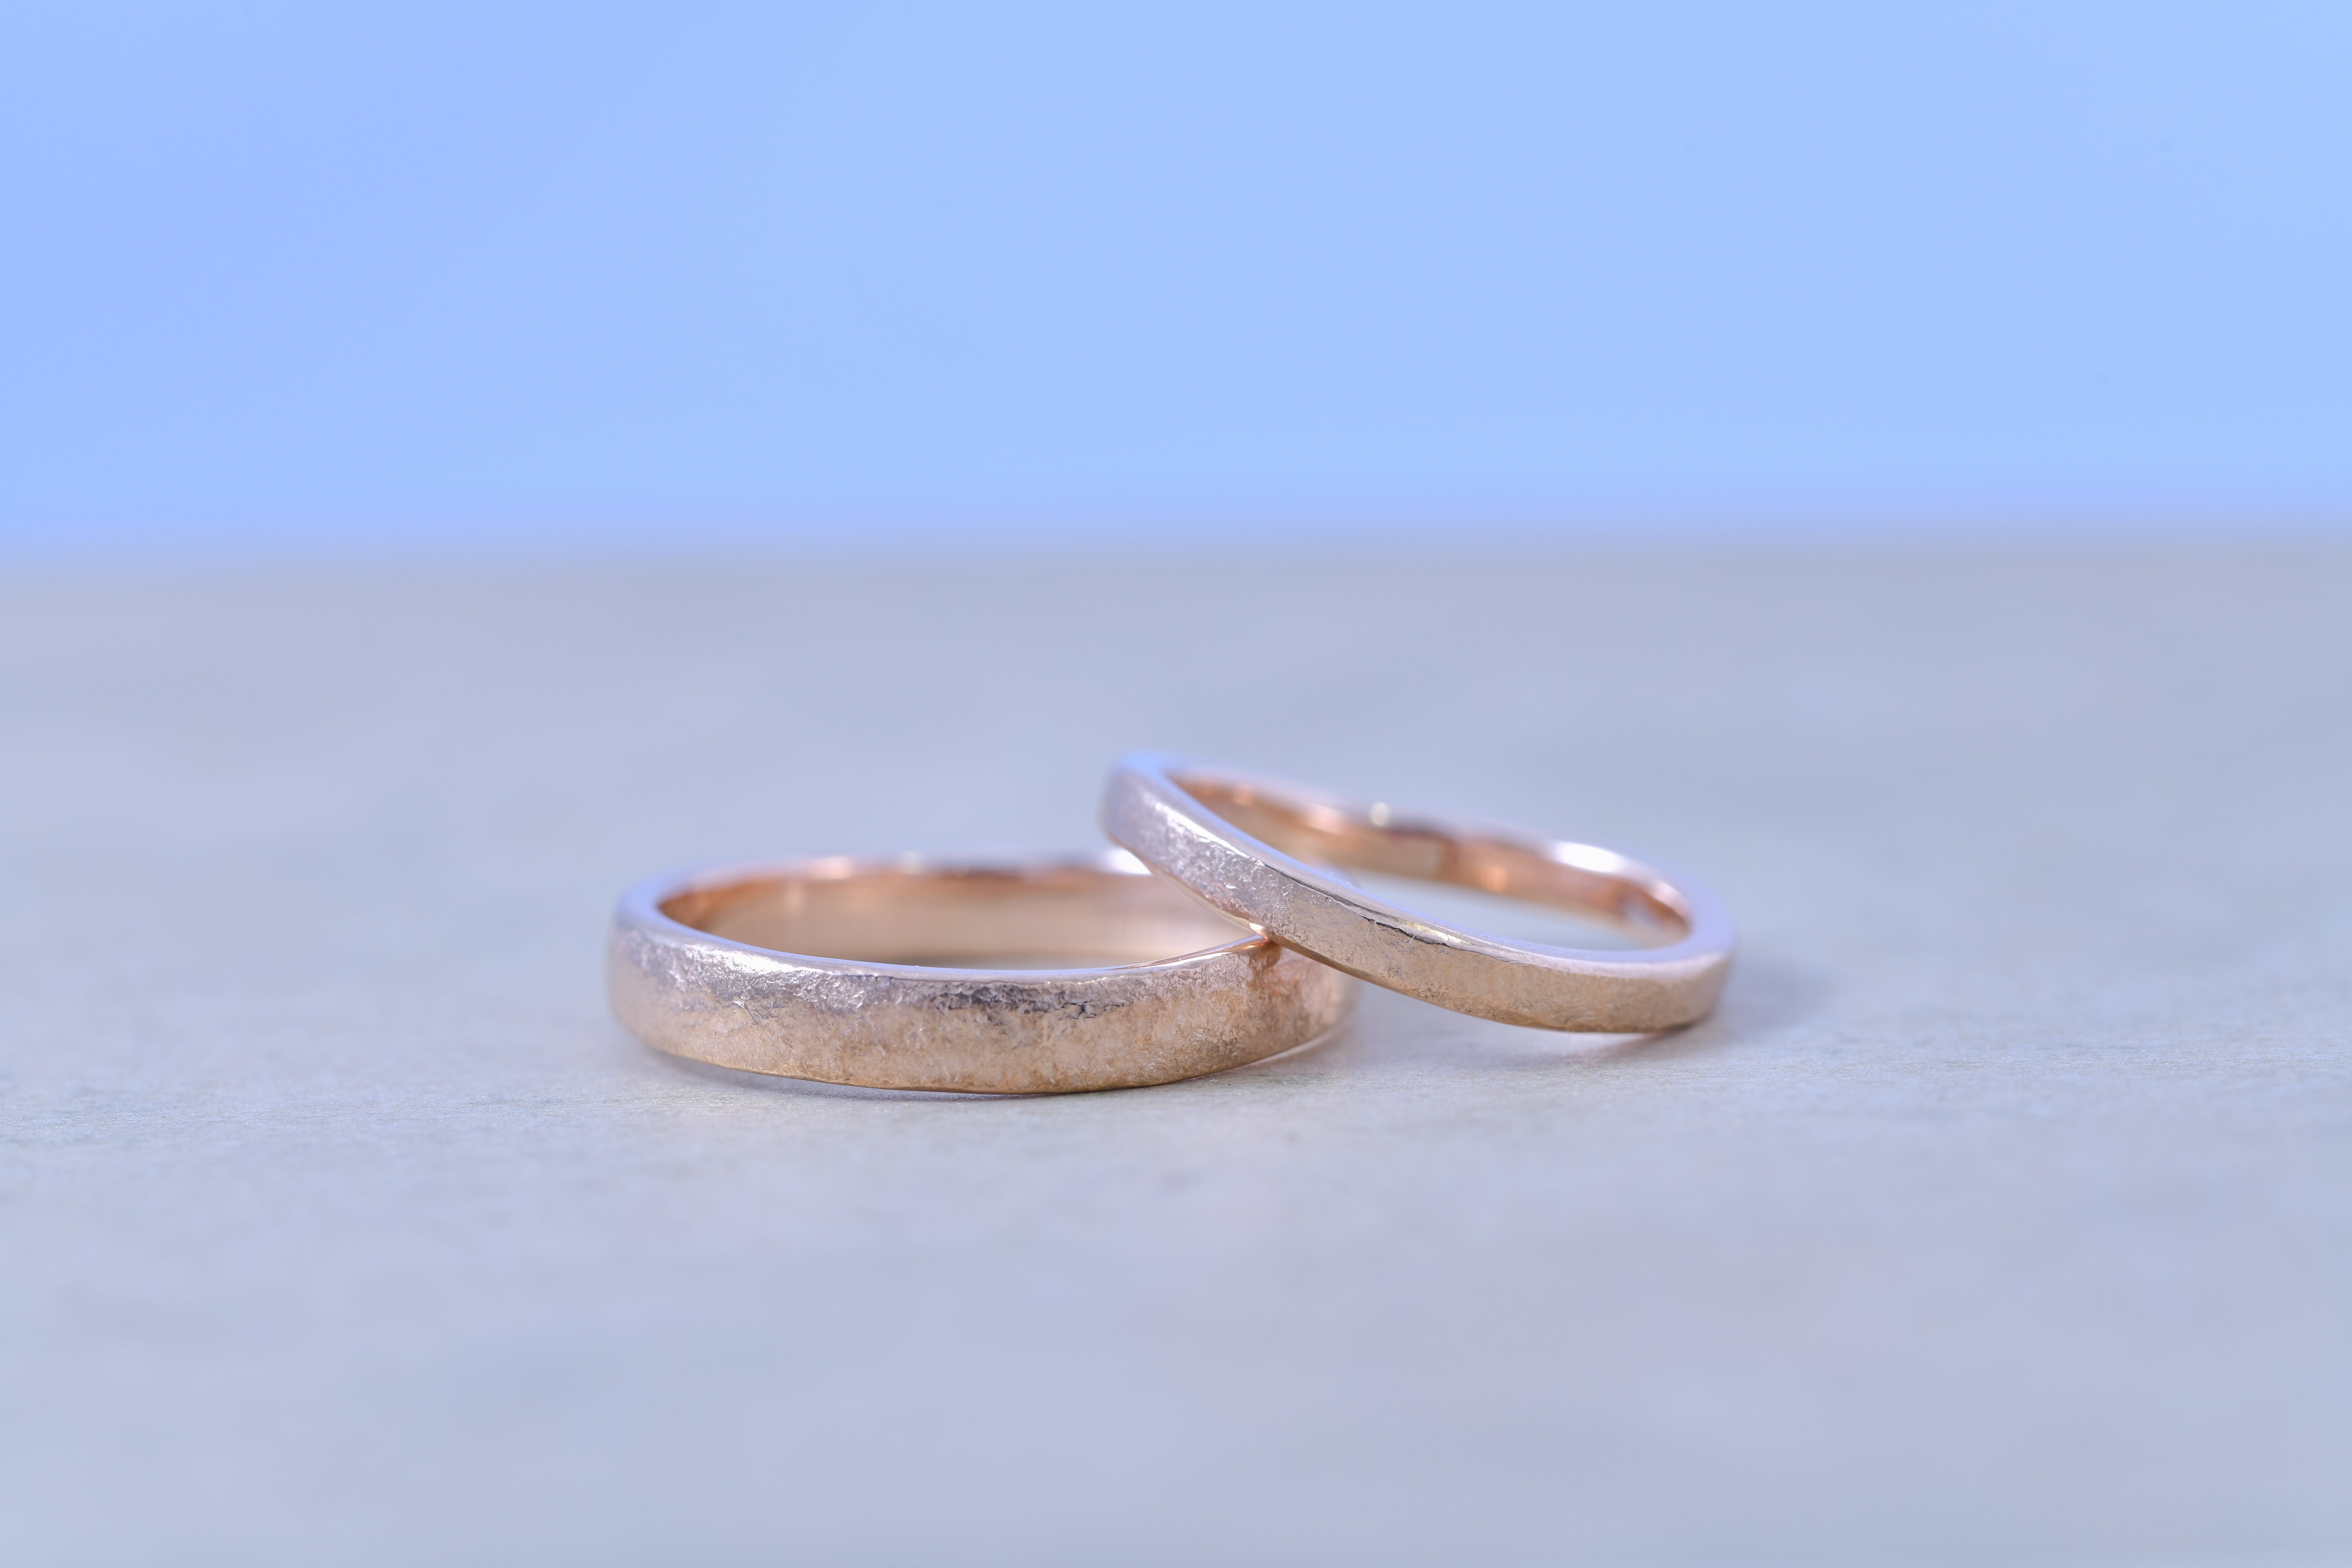 表情豊かなピンクゴールド結婚指輪 | 結婚指輪手作り作品